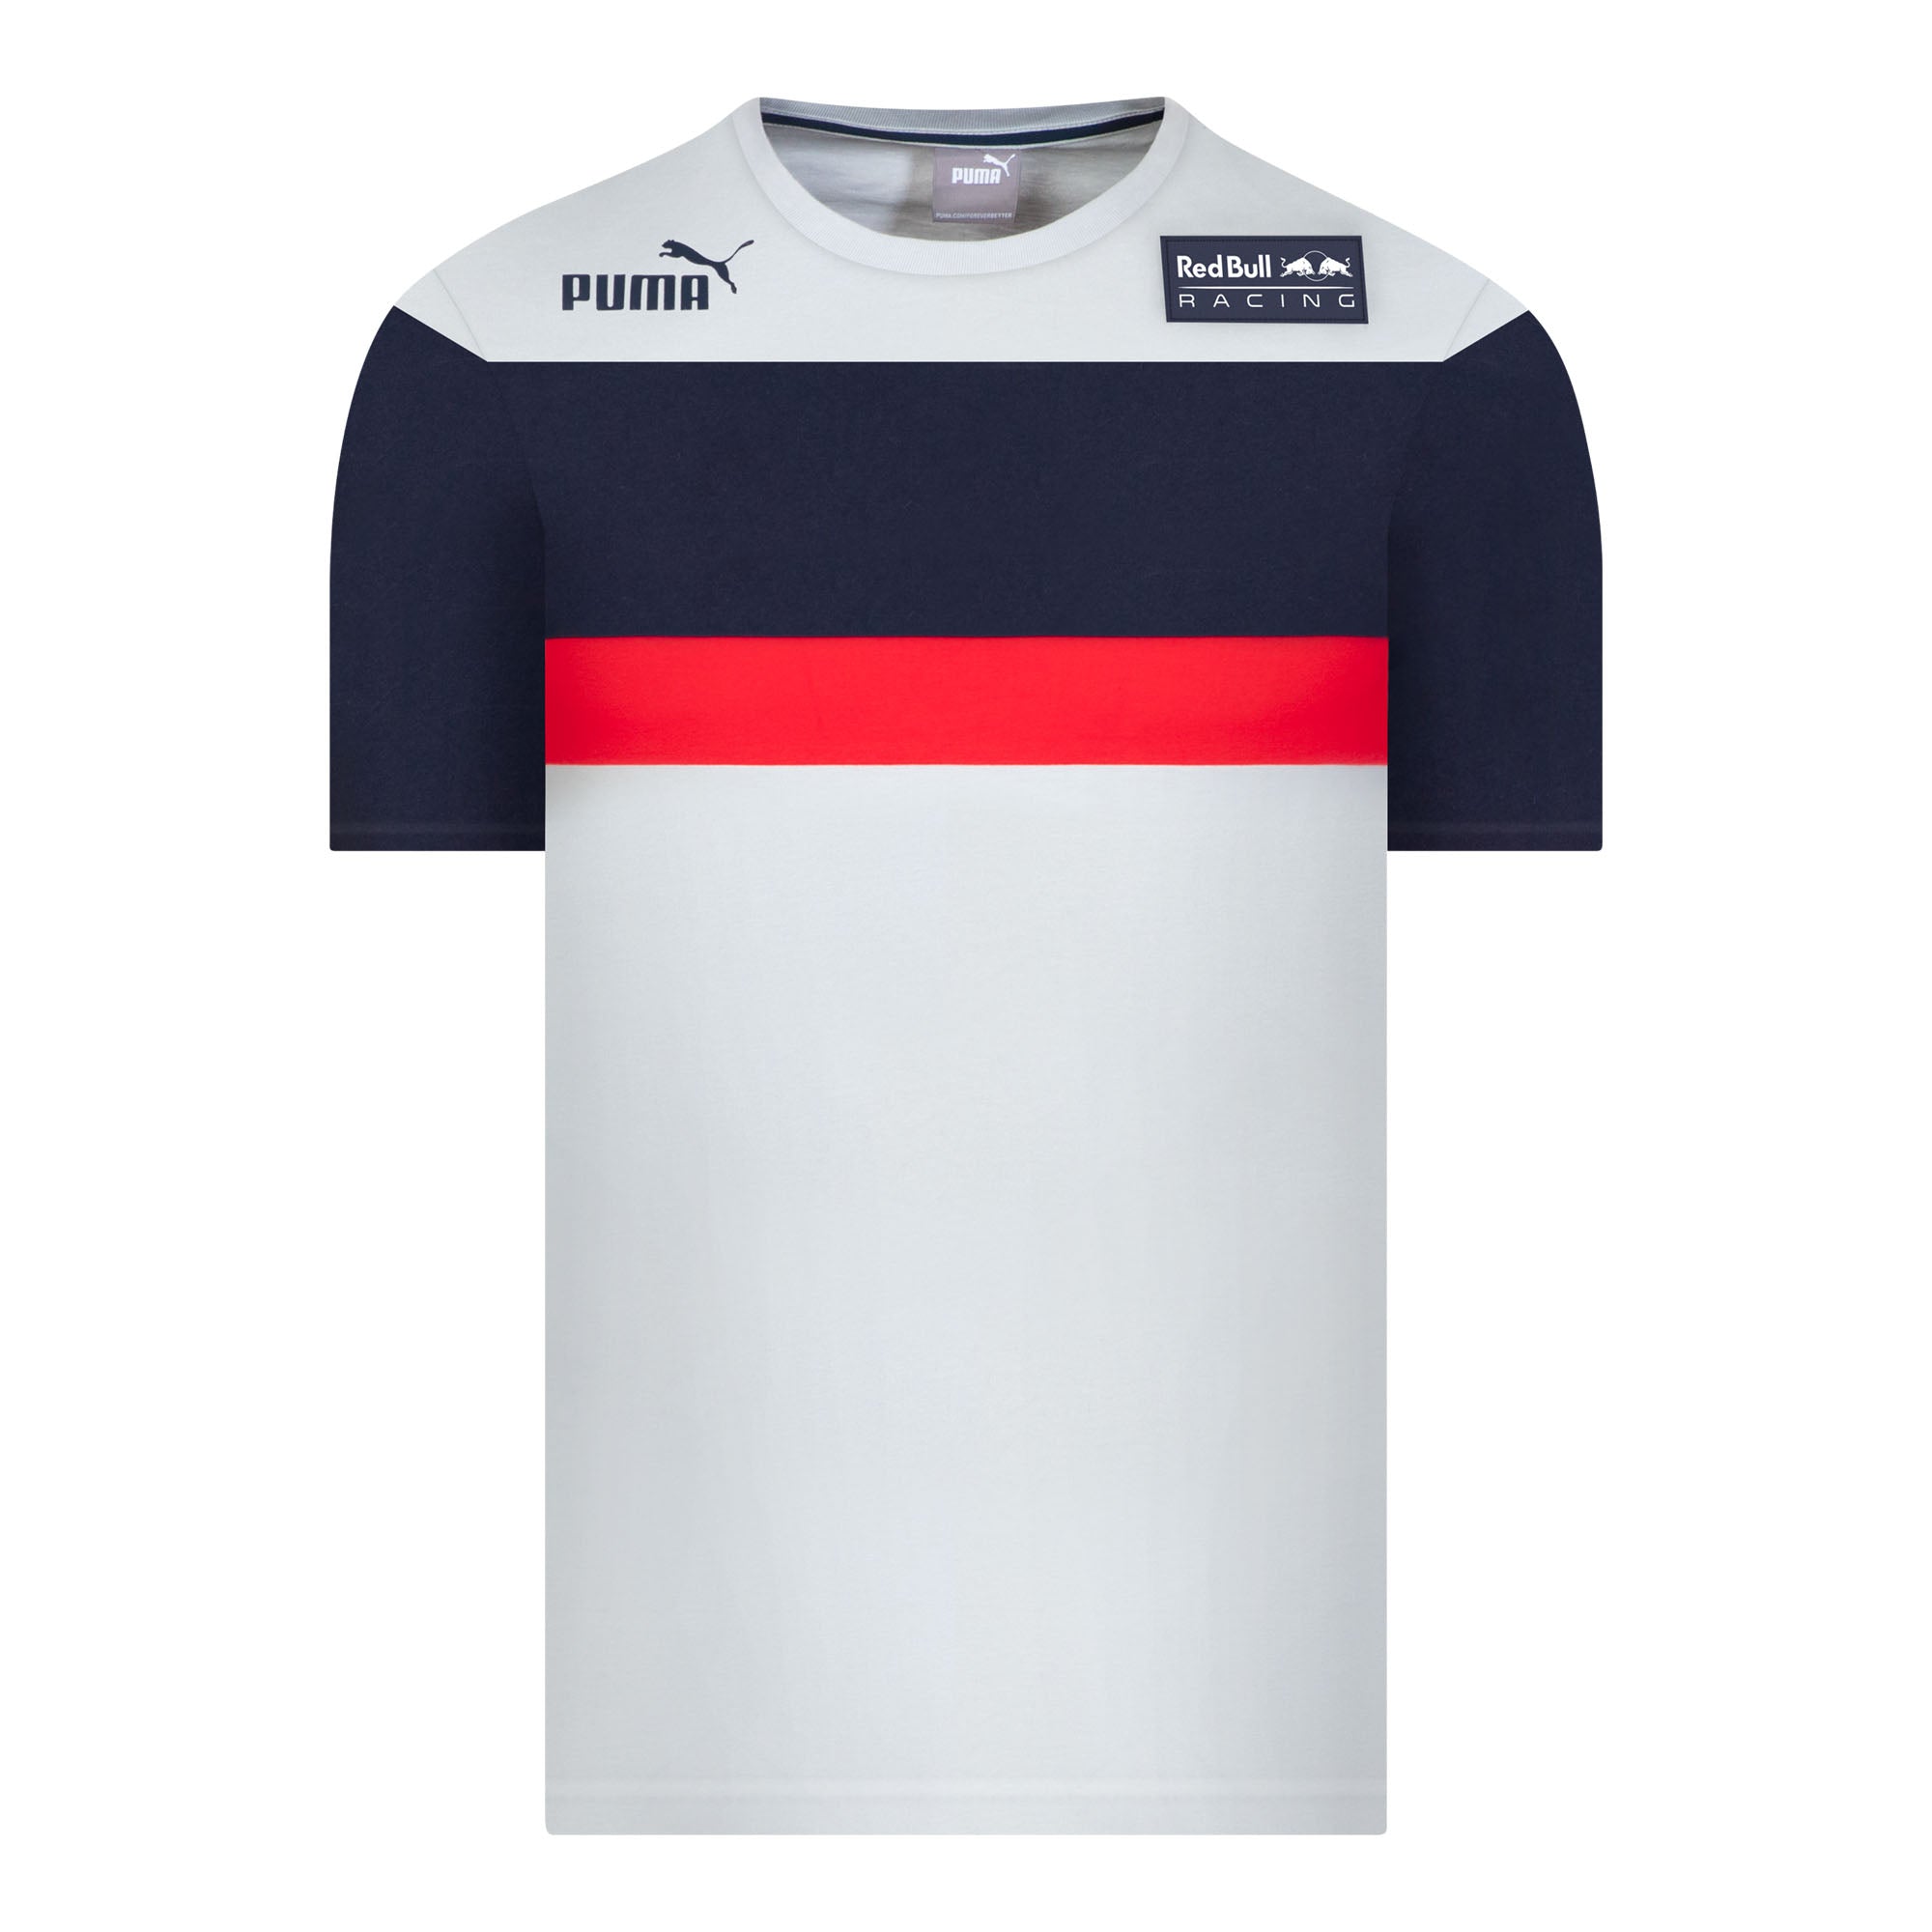 Puma T-Shirts : Buy Puma Team Striped Mens White T-shirt Online